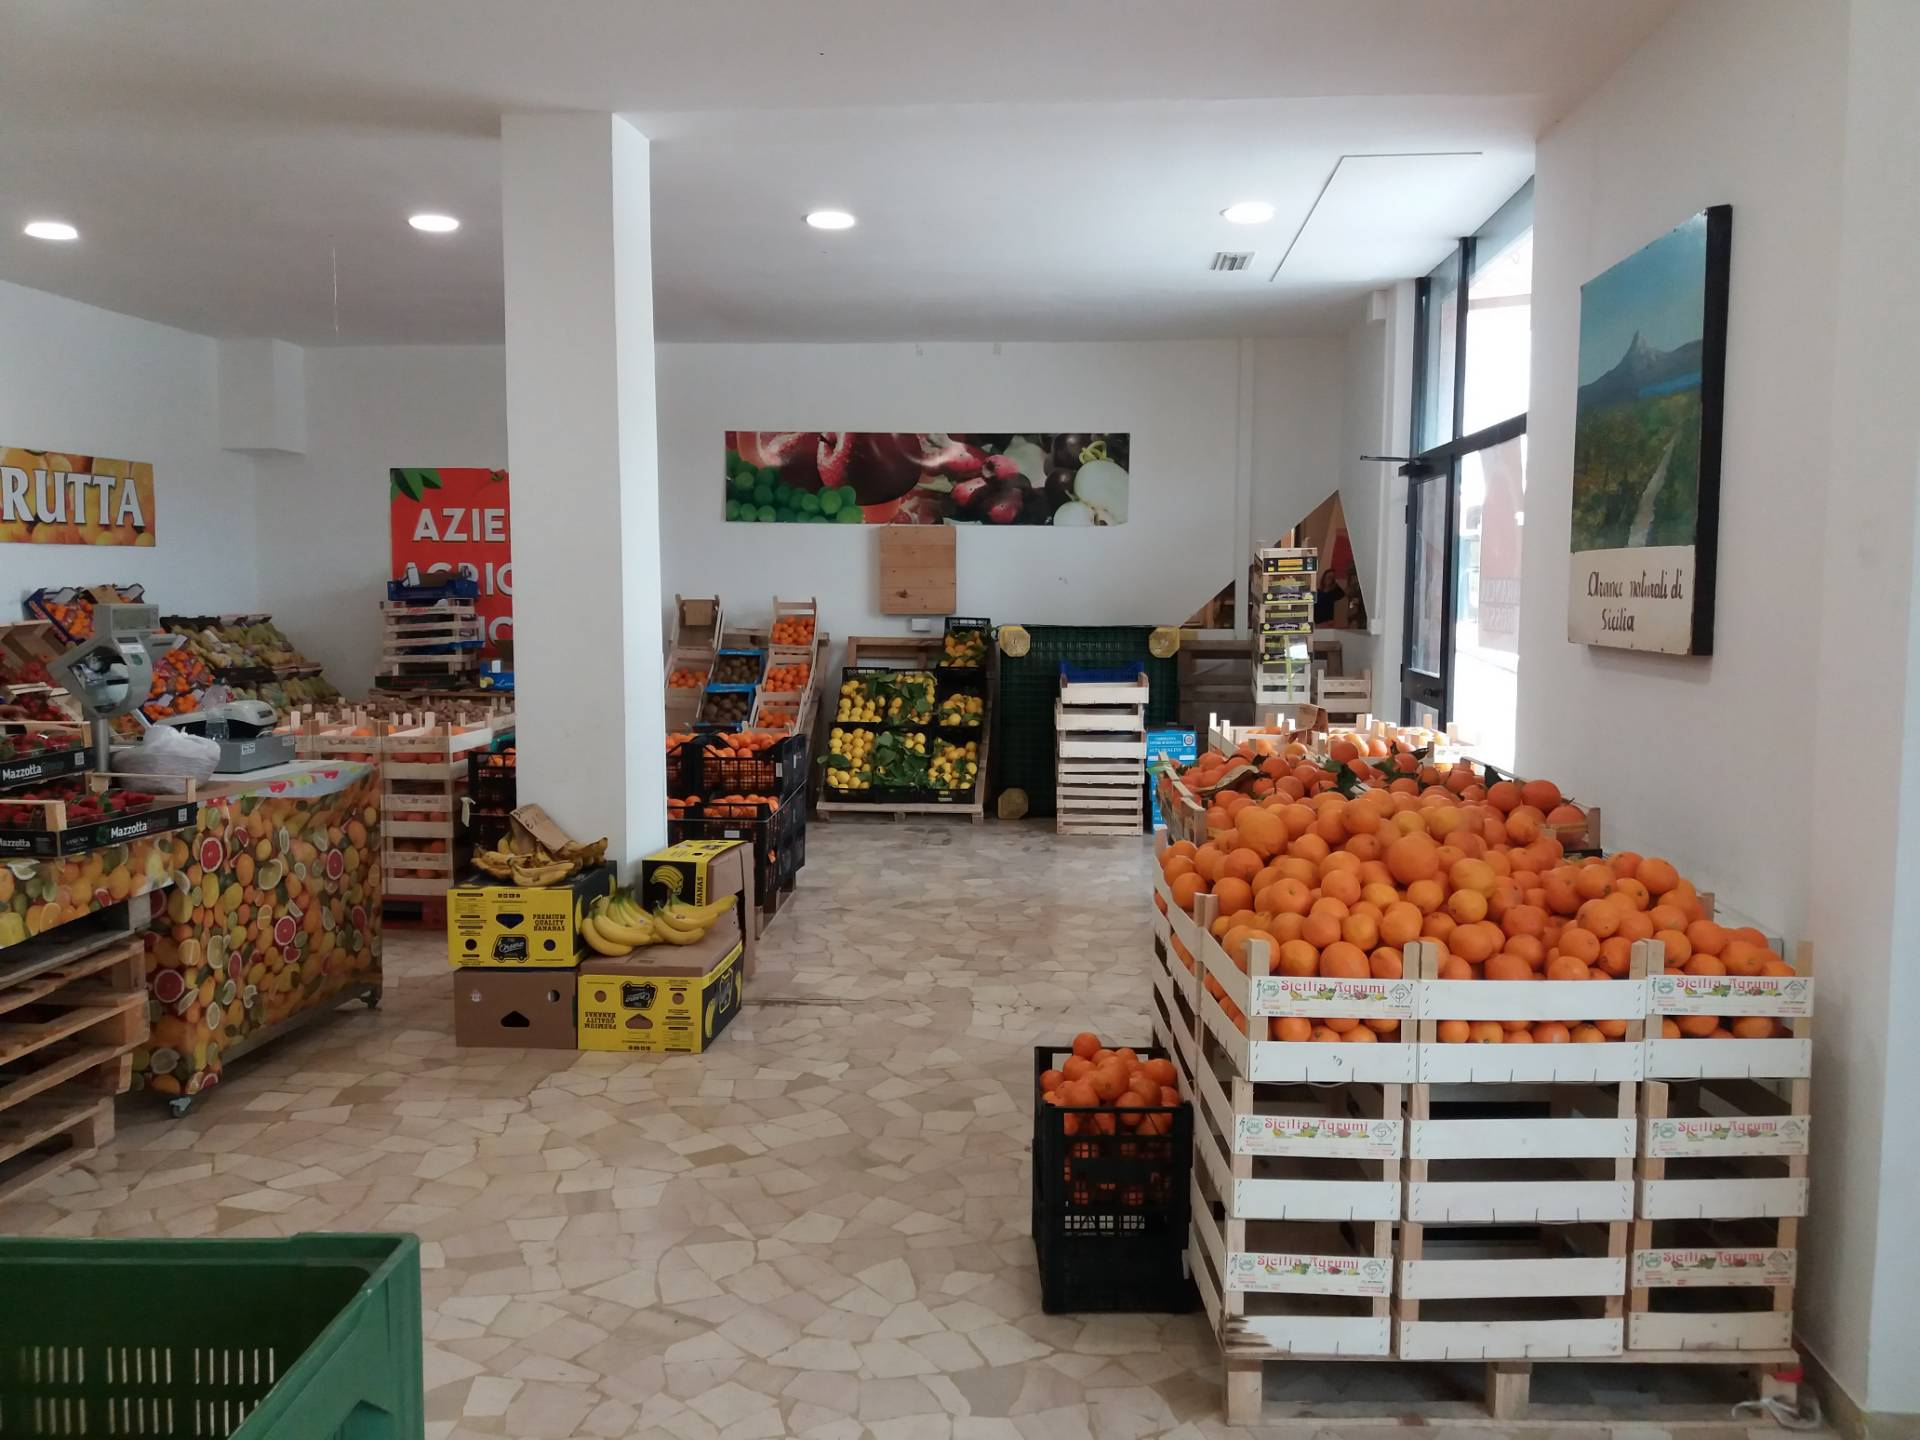 Attivit commerciale in vendita, Ascoli Piceno zona caserma